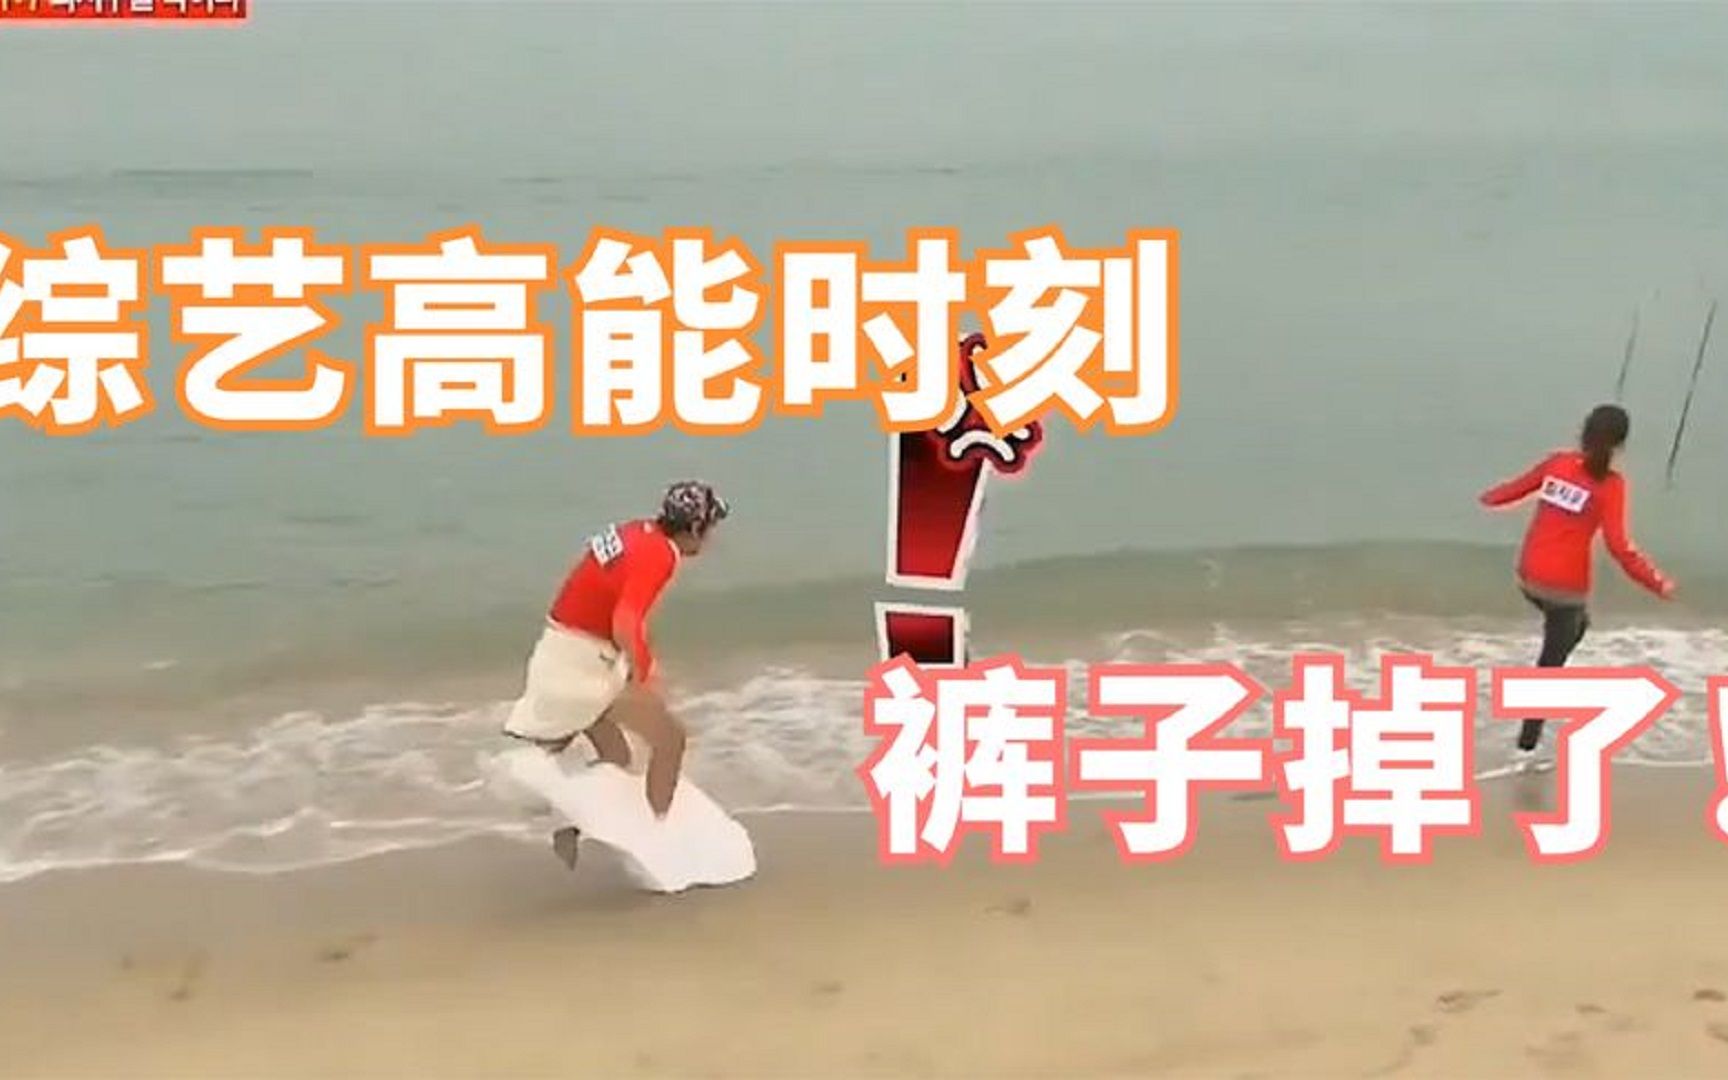 综艺中掉裤子的搞笑时刻:李光洙摔倒在海边,郭麒麟被扯坏扣子